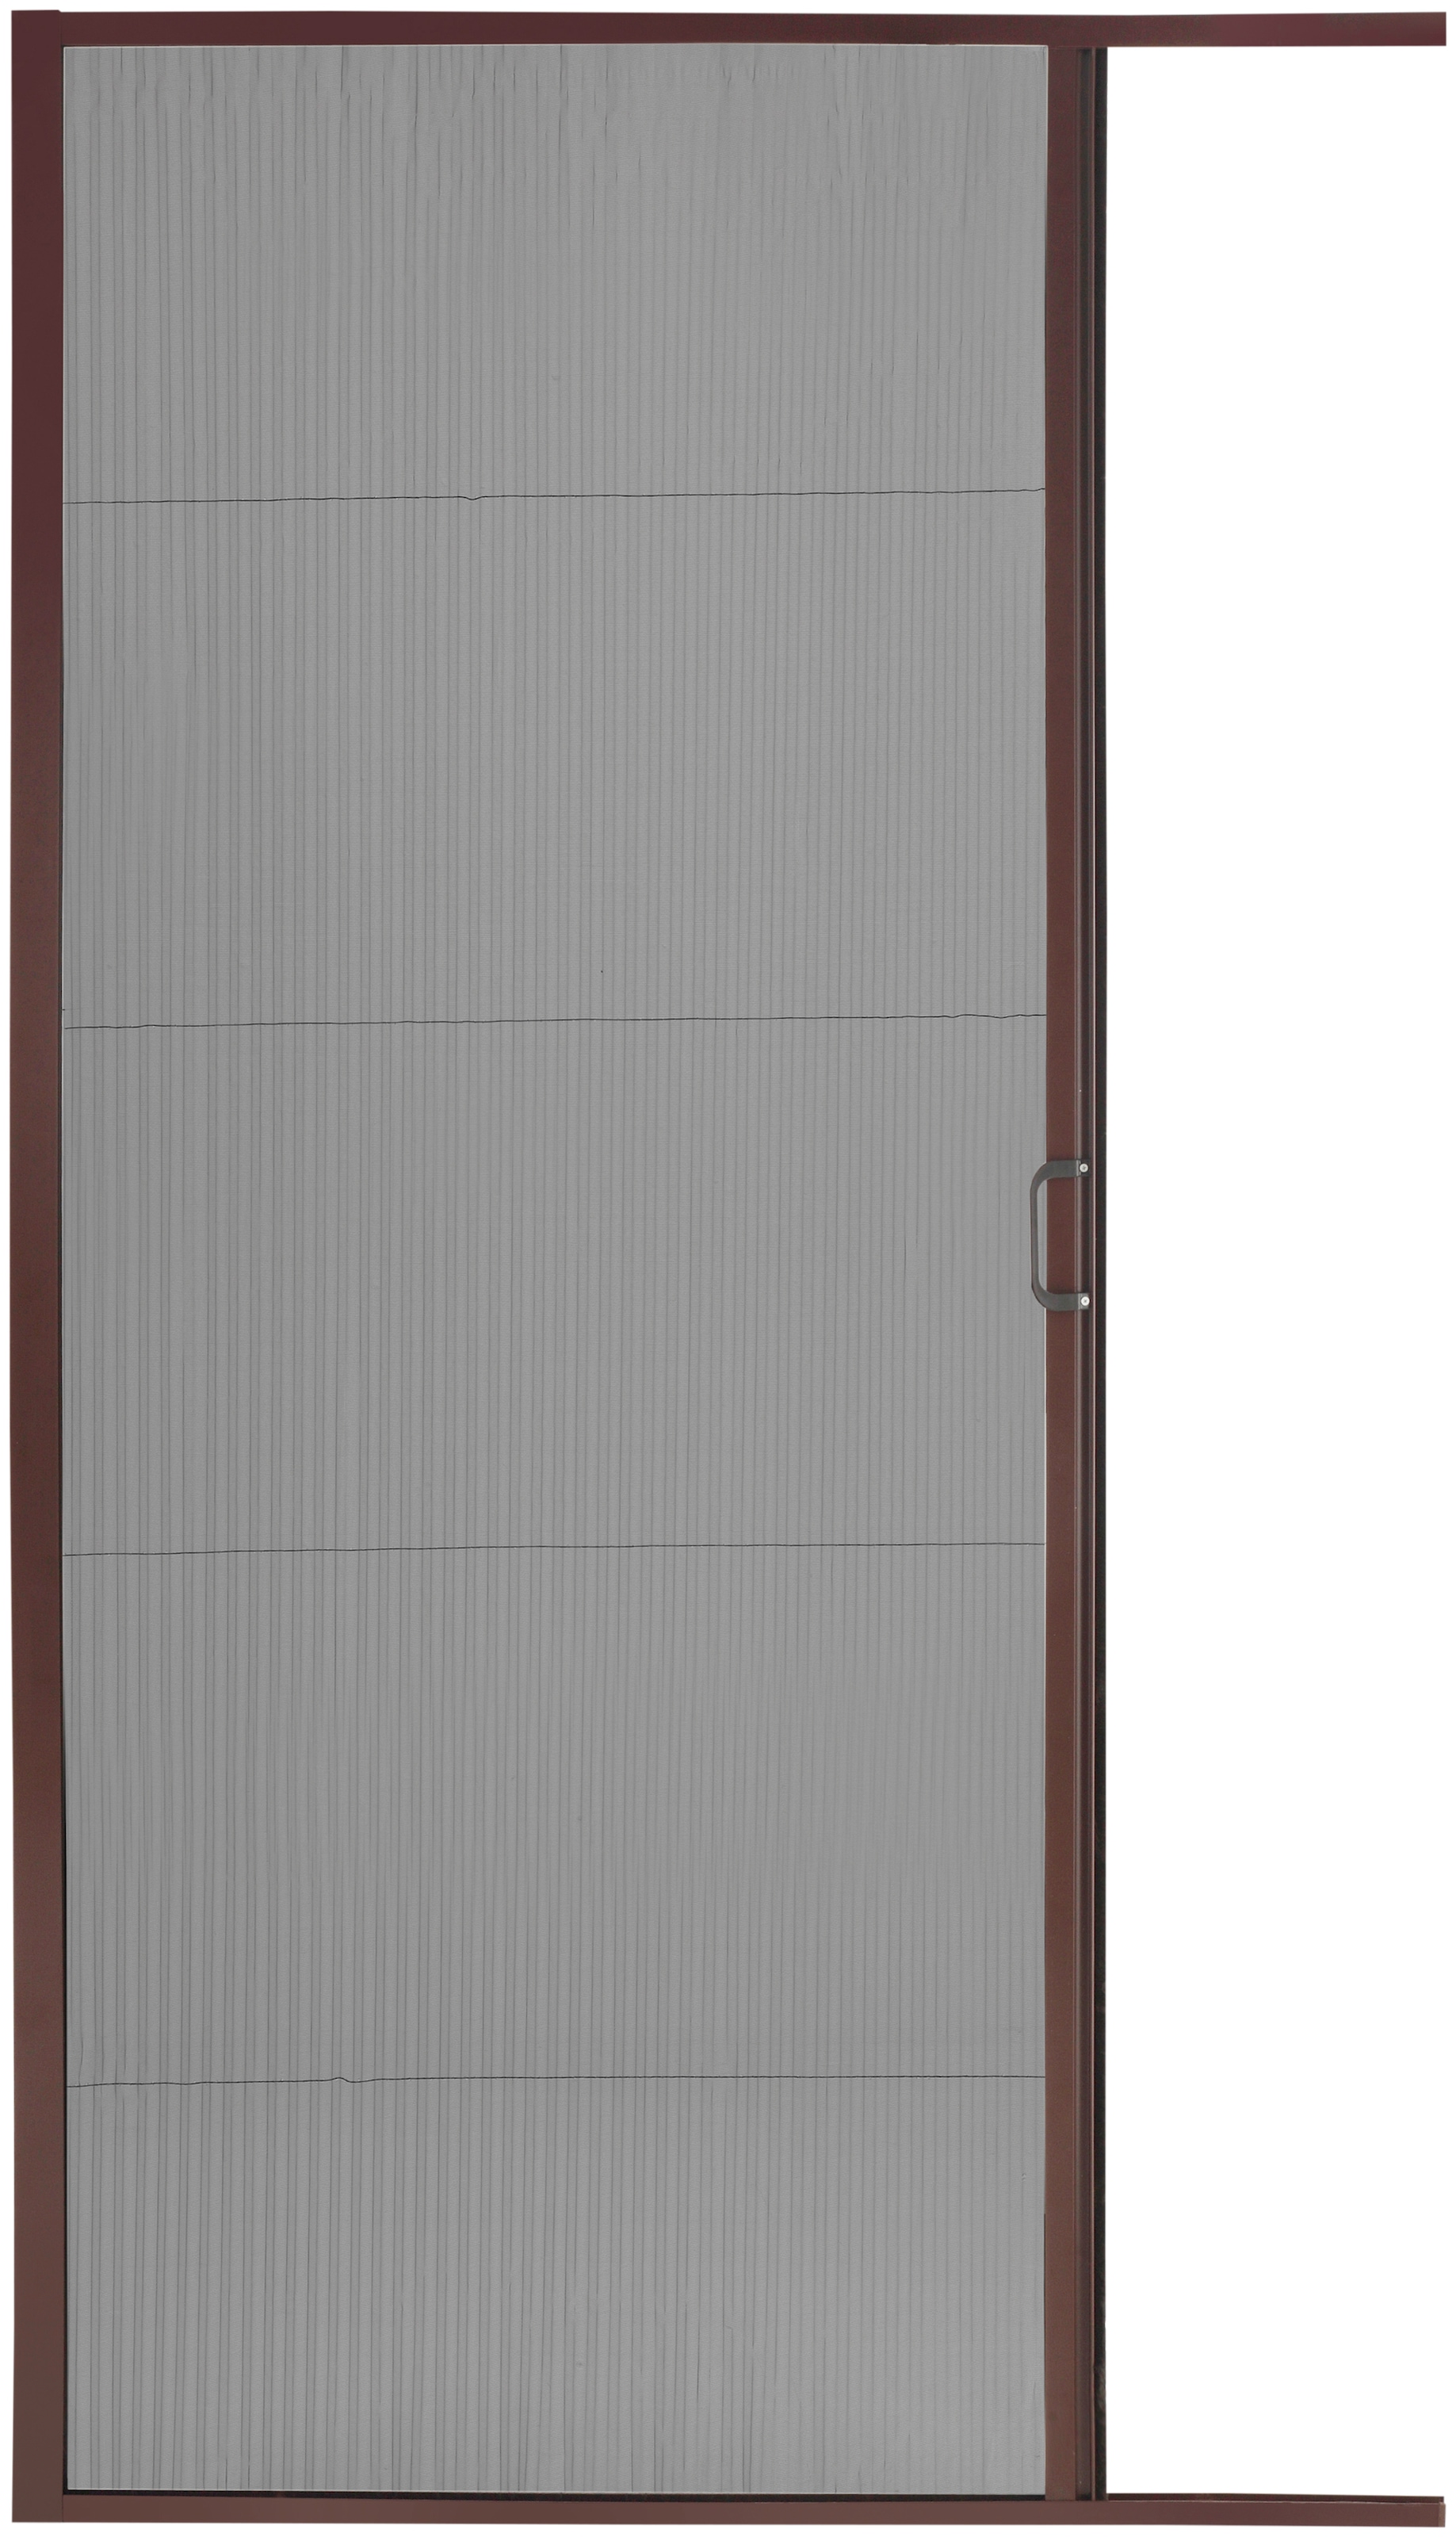 Insektenschutz-Tür, braun/anthrazit, BxH: 125x220 cm